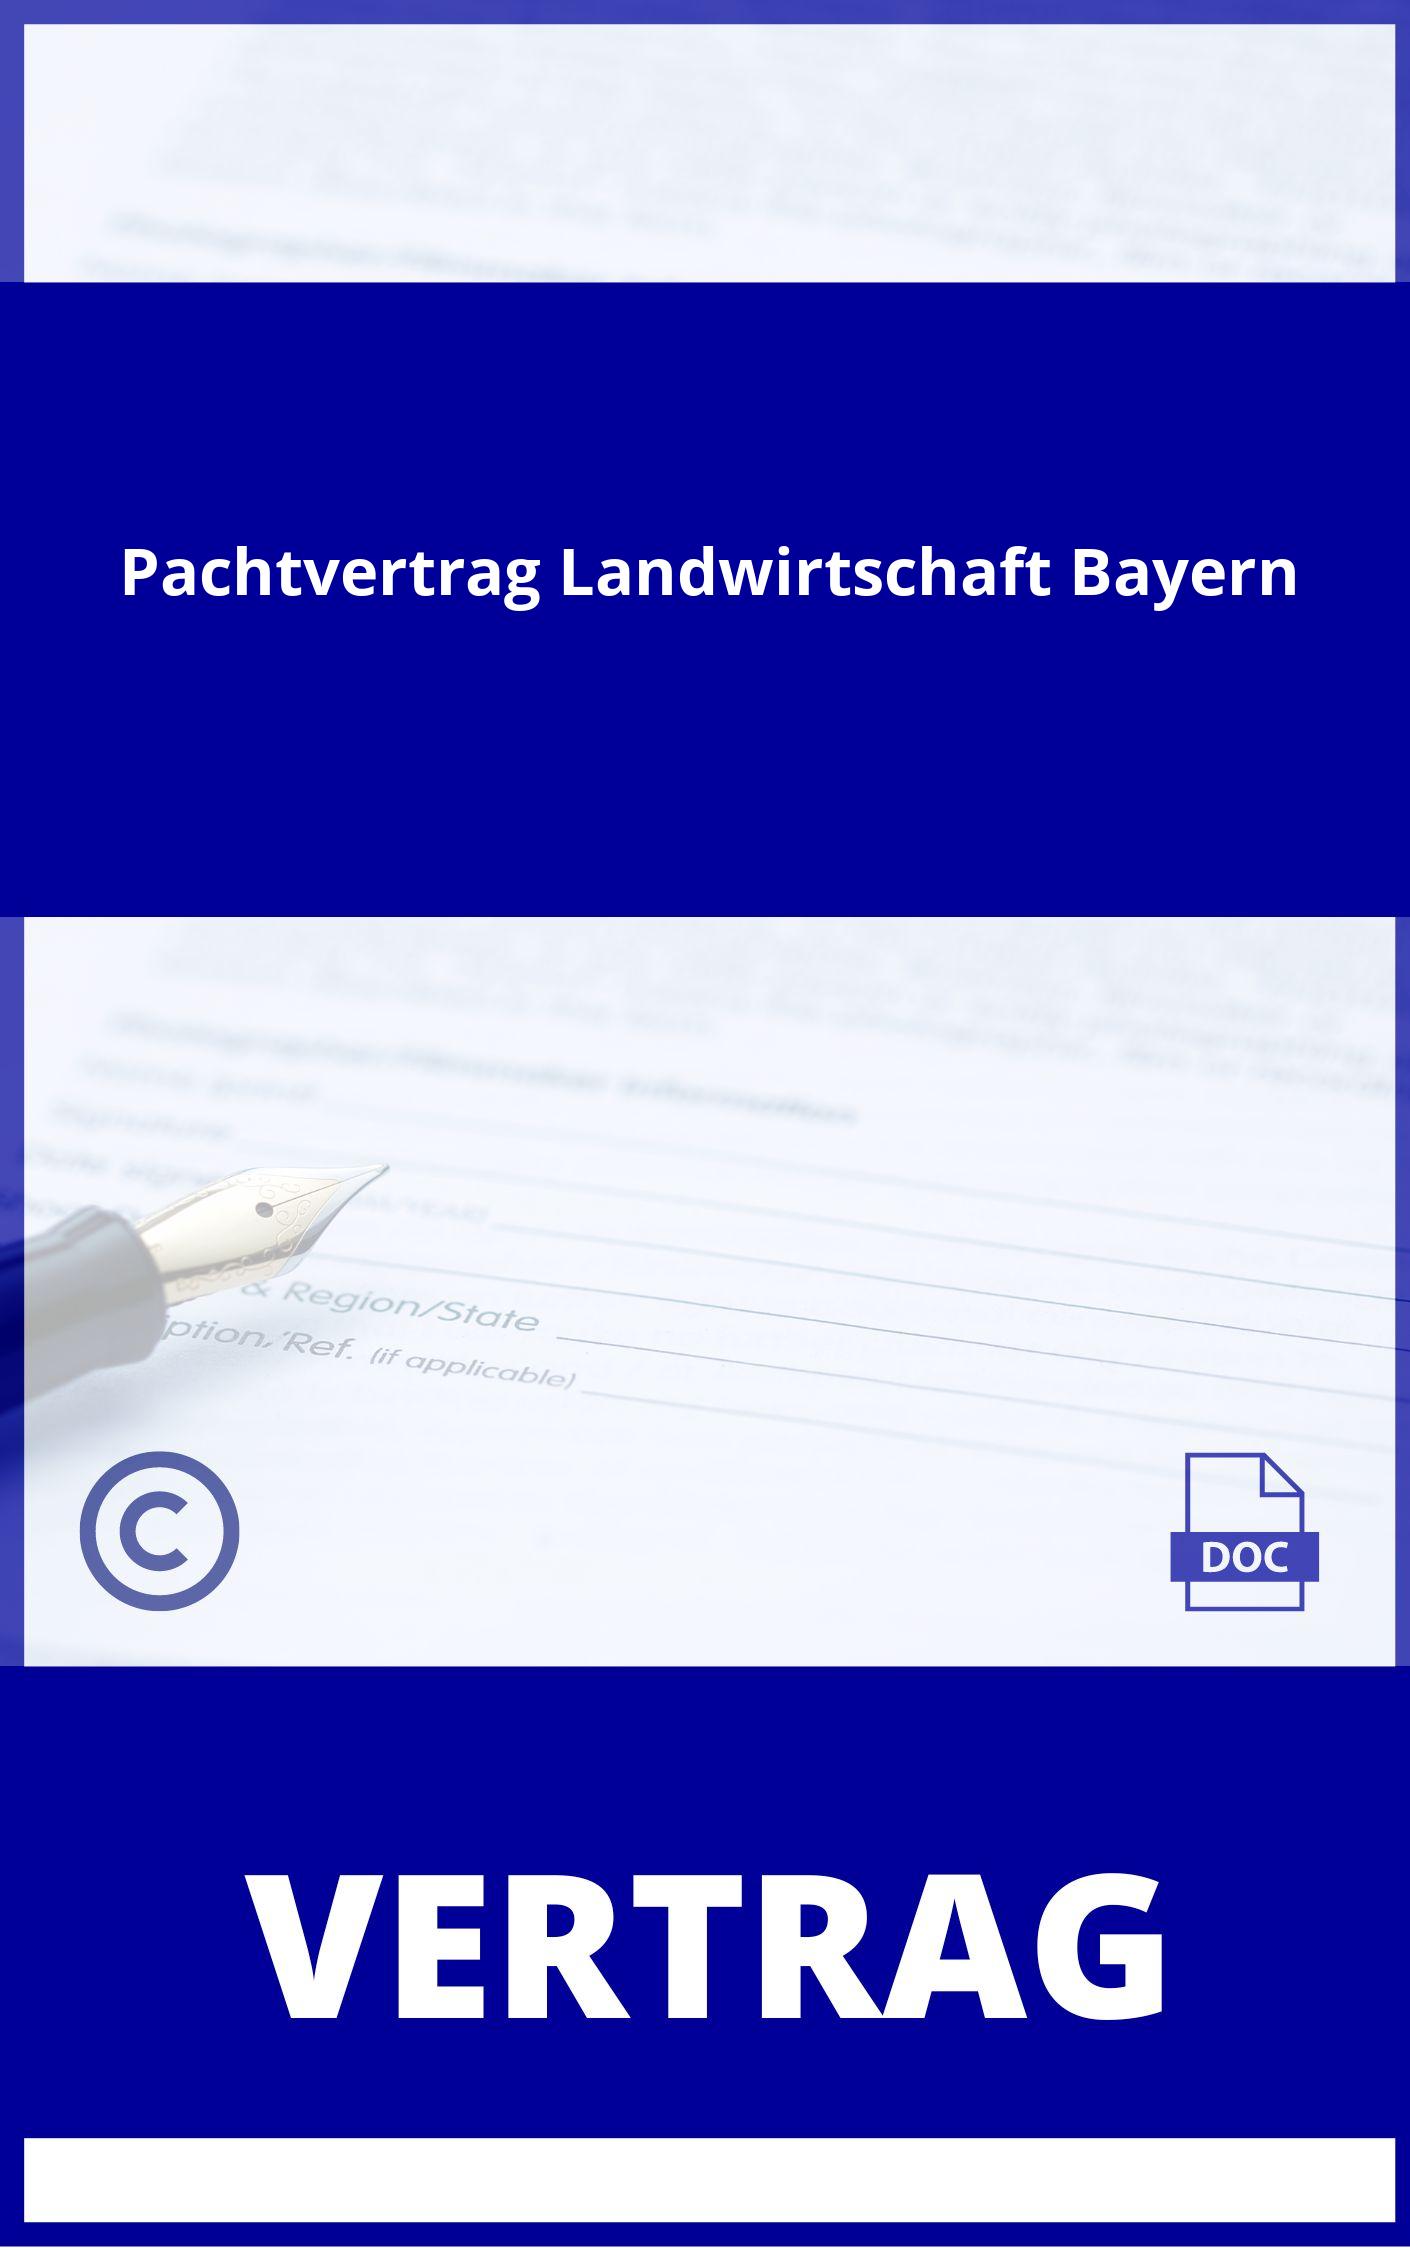 Pachtvertrag Landwirtschaft Muster Word Bayern